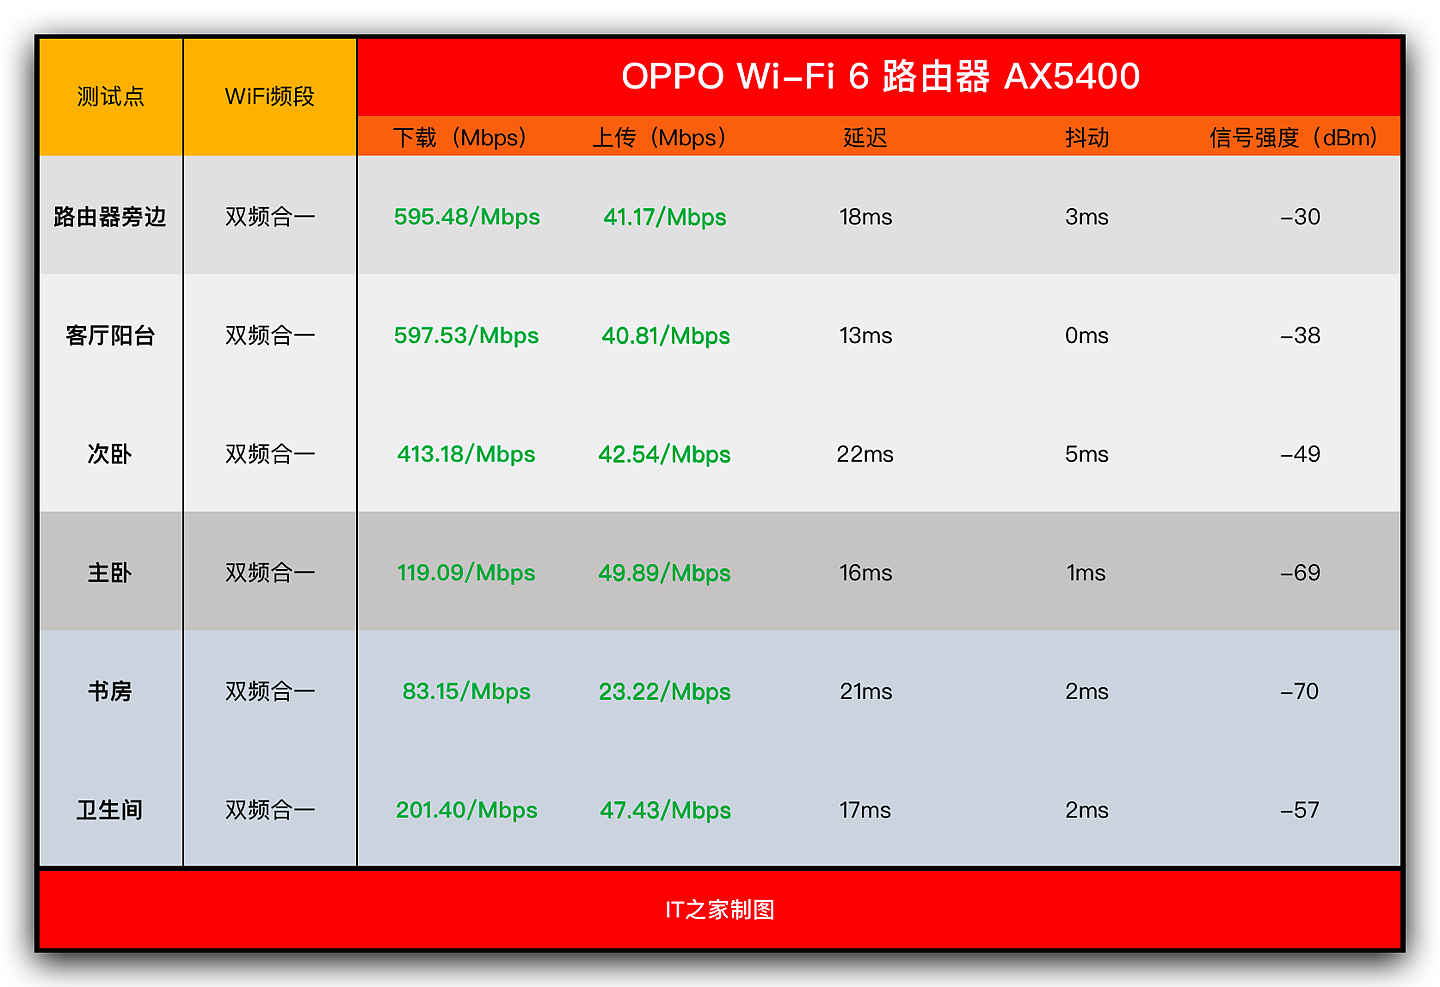 【IT之家评测室】OPPO Wi-Fi 6 路由器 AX5400 上手：好看得不像一台路由器 - 10